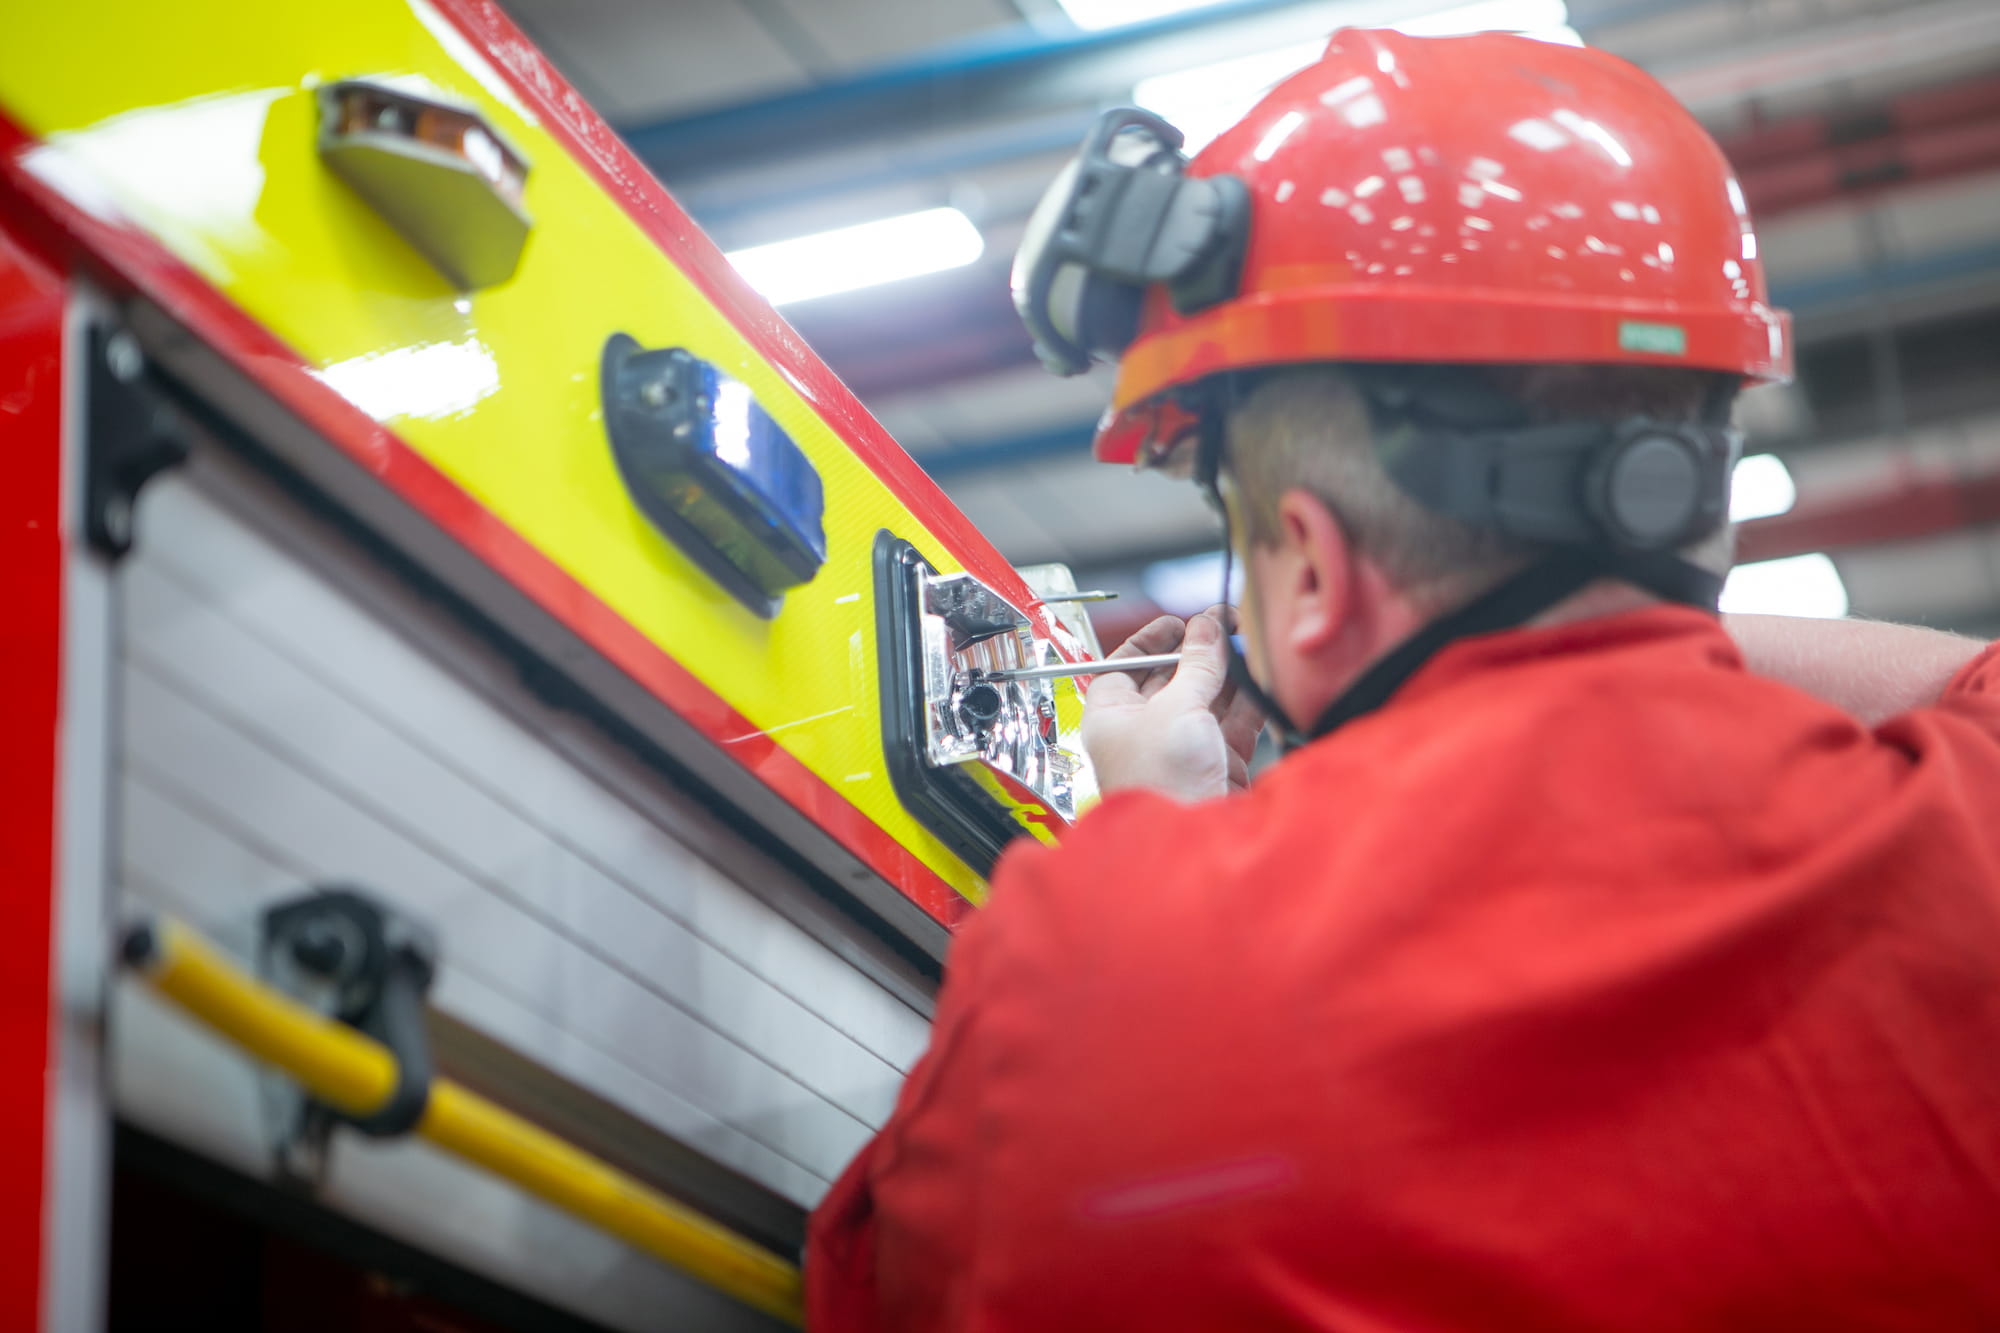 A workshops technician doing work on a fire engine light fixture